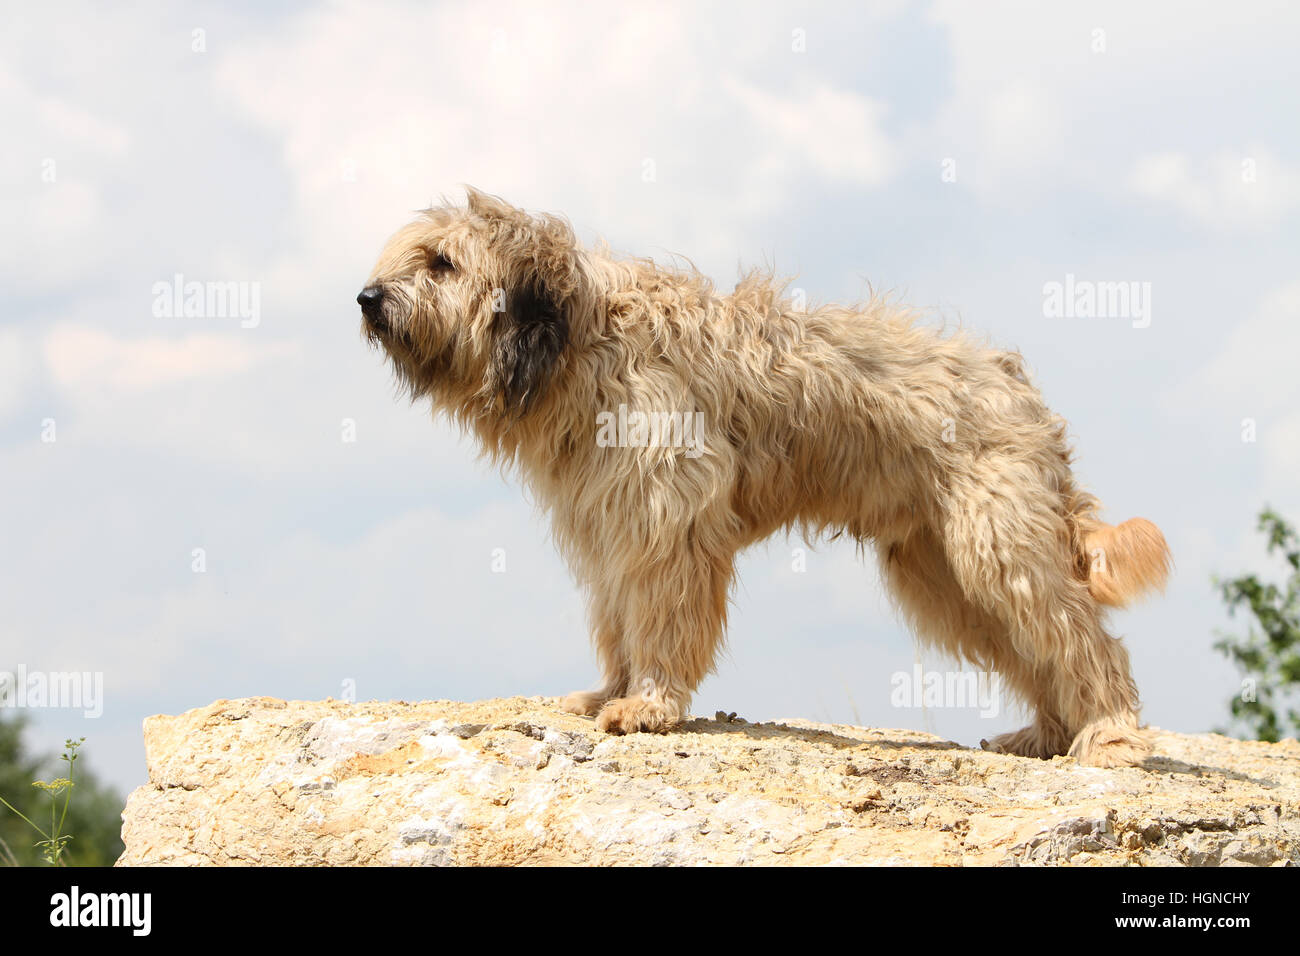 Katalanische Schäferhund Hund / Gos d'atura Català Erwachsener (Fawn) auf  einem Felsen steht Stockfotografie - Alamy